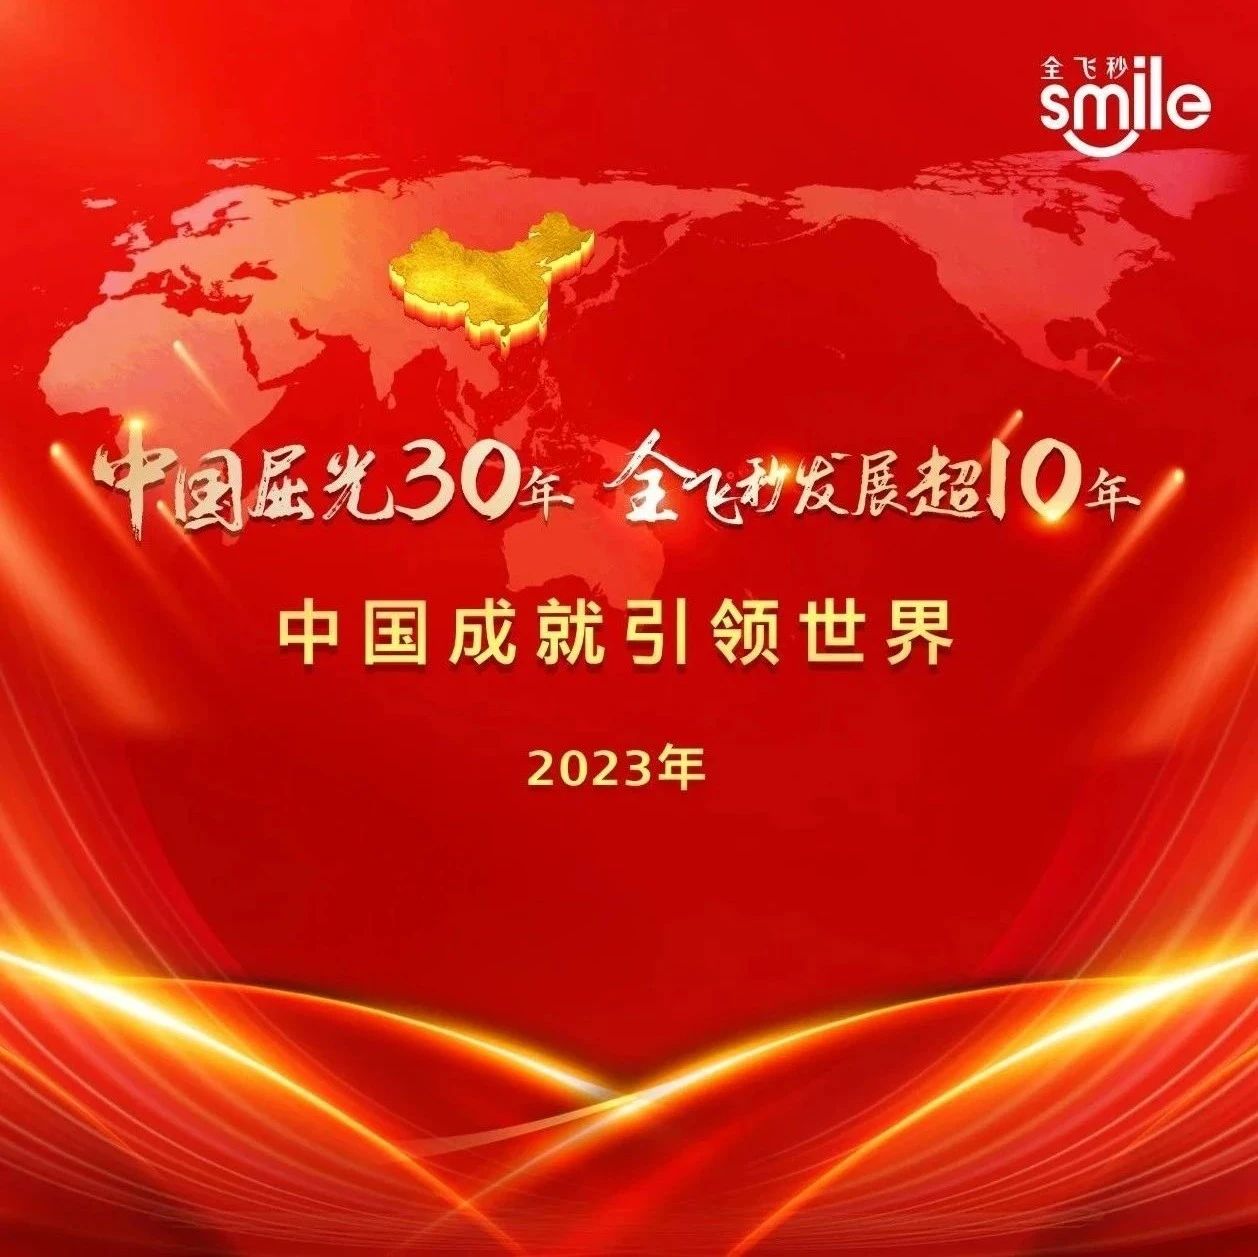 与COOC同行丨“中国屈光30年、全飞秒发展超10年、中国成就引领世界”庆典成功举办